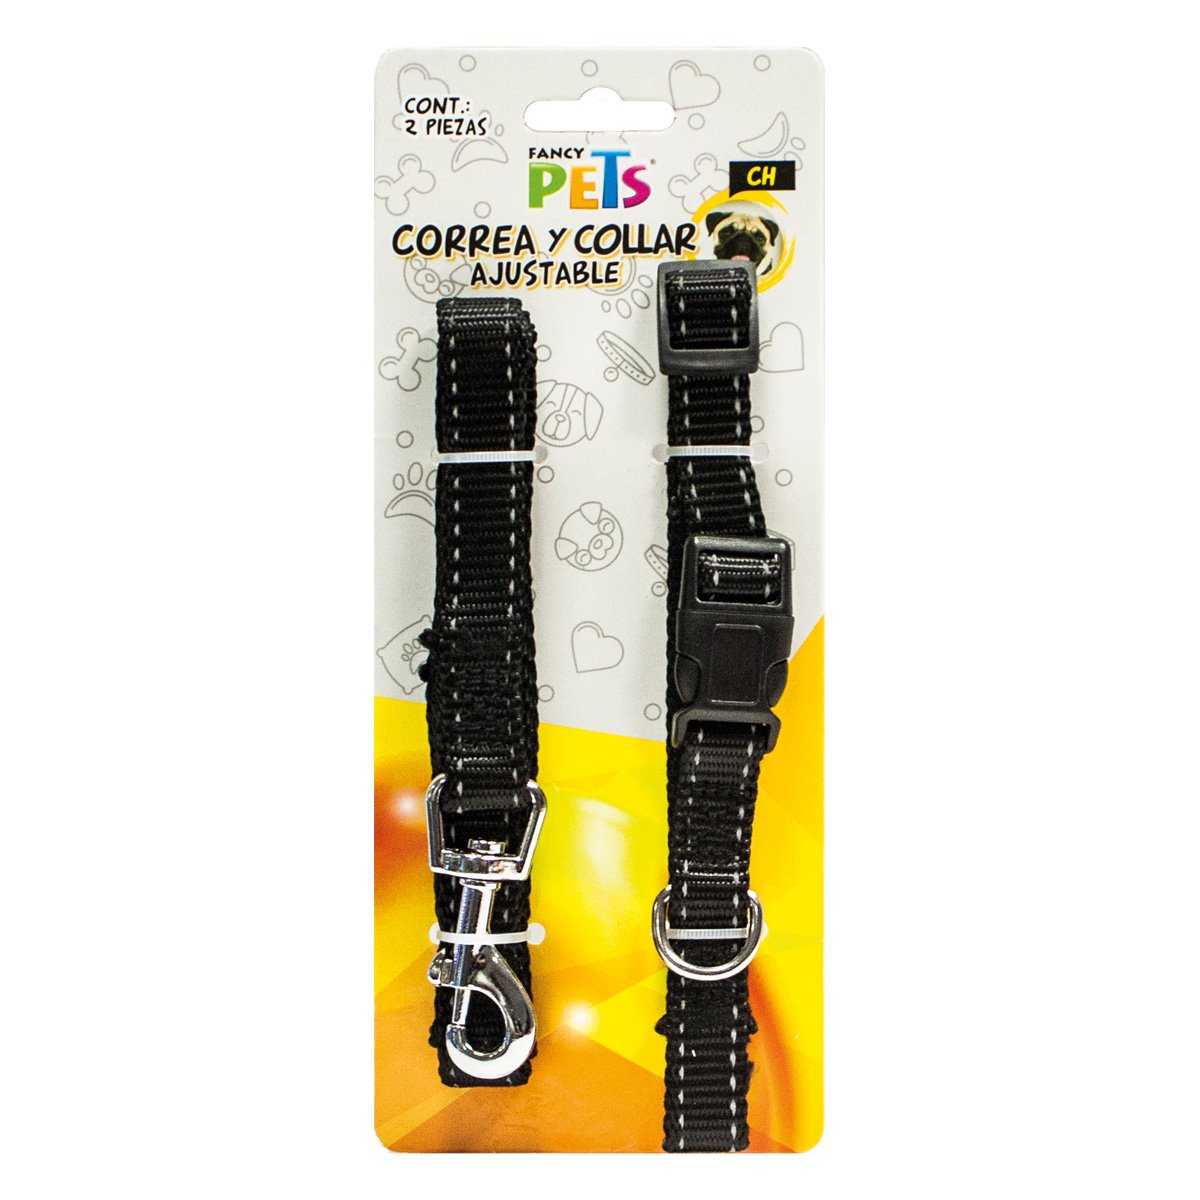 Correa/collar Nylon Bandas Reflejantes Ch